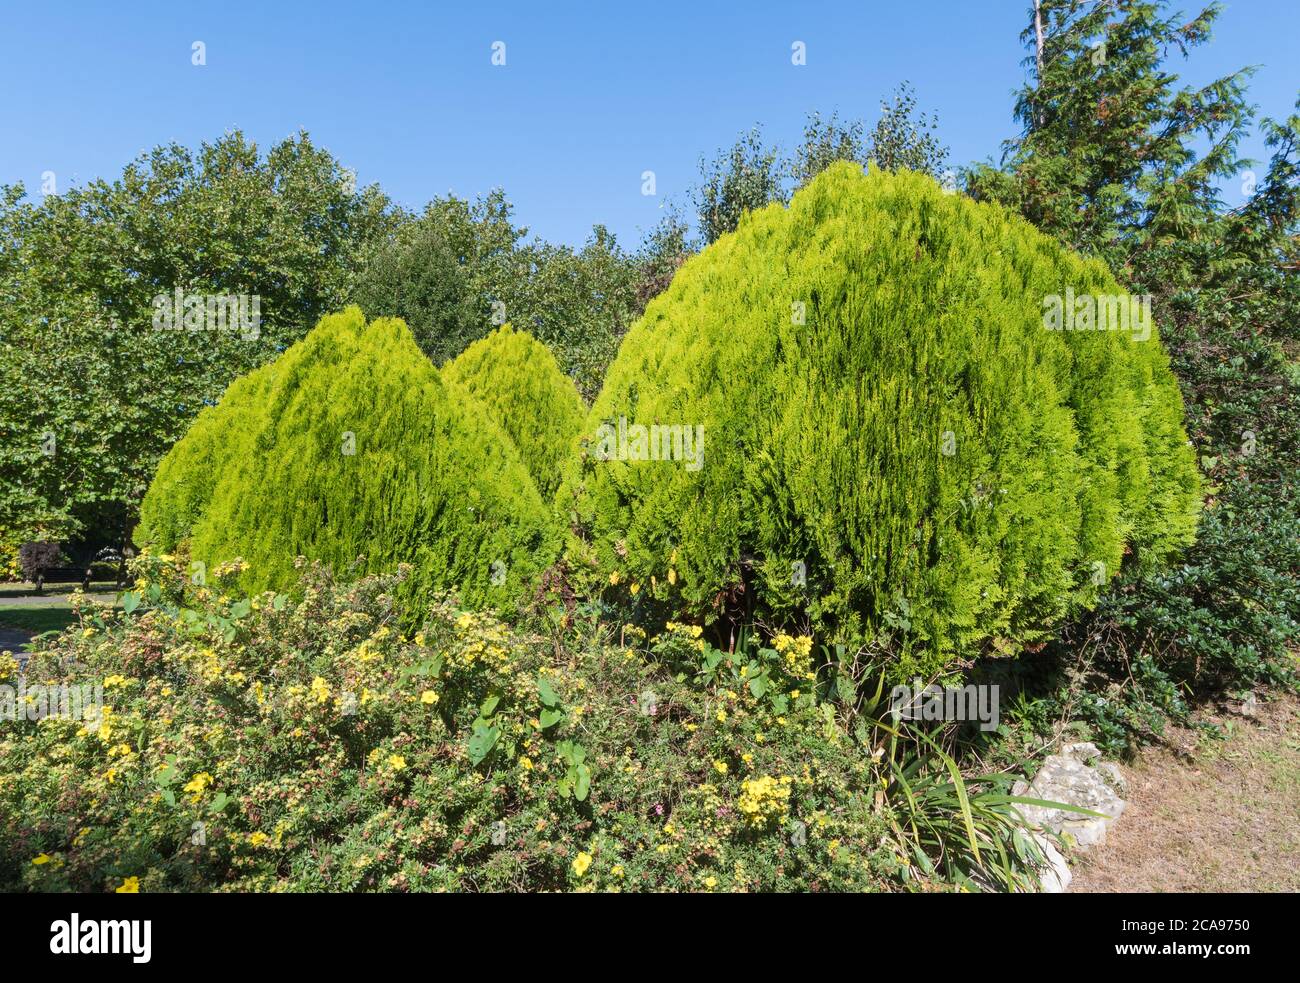 Arbustos bien recortados en un parque. Bush después de un recorte ordenado y ordenado. Foto de stock